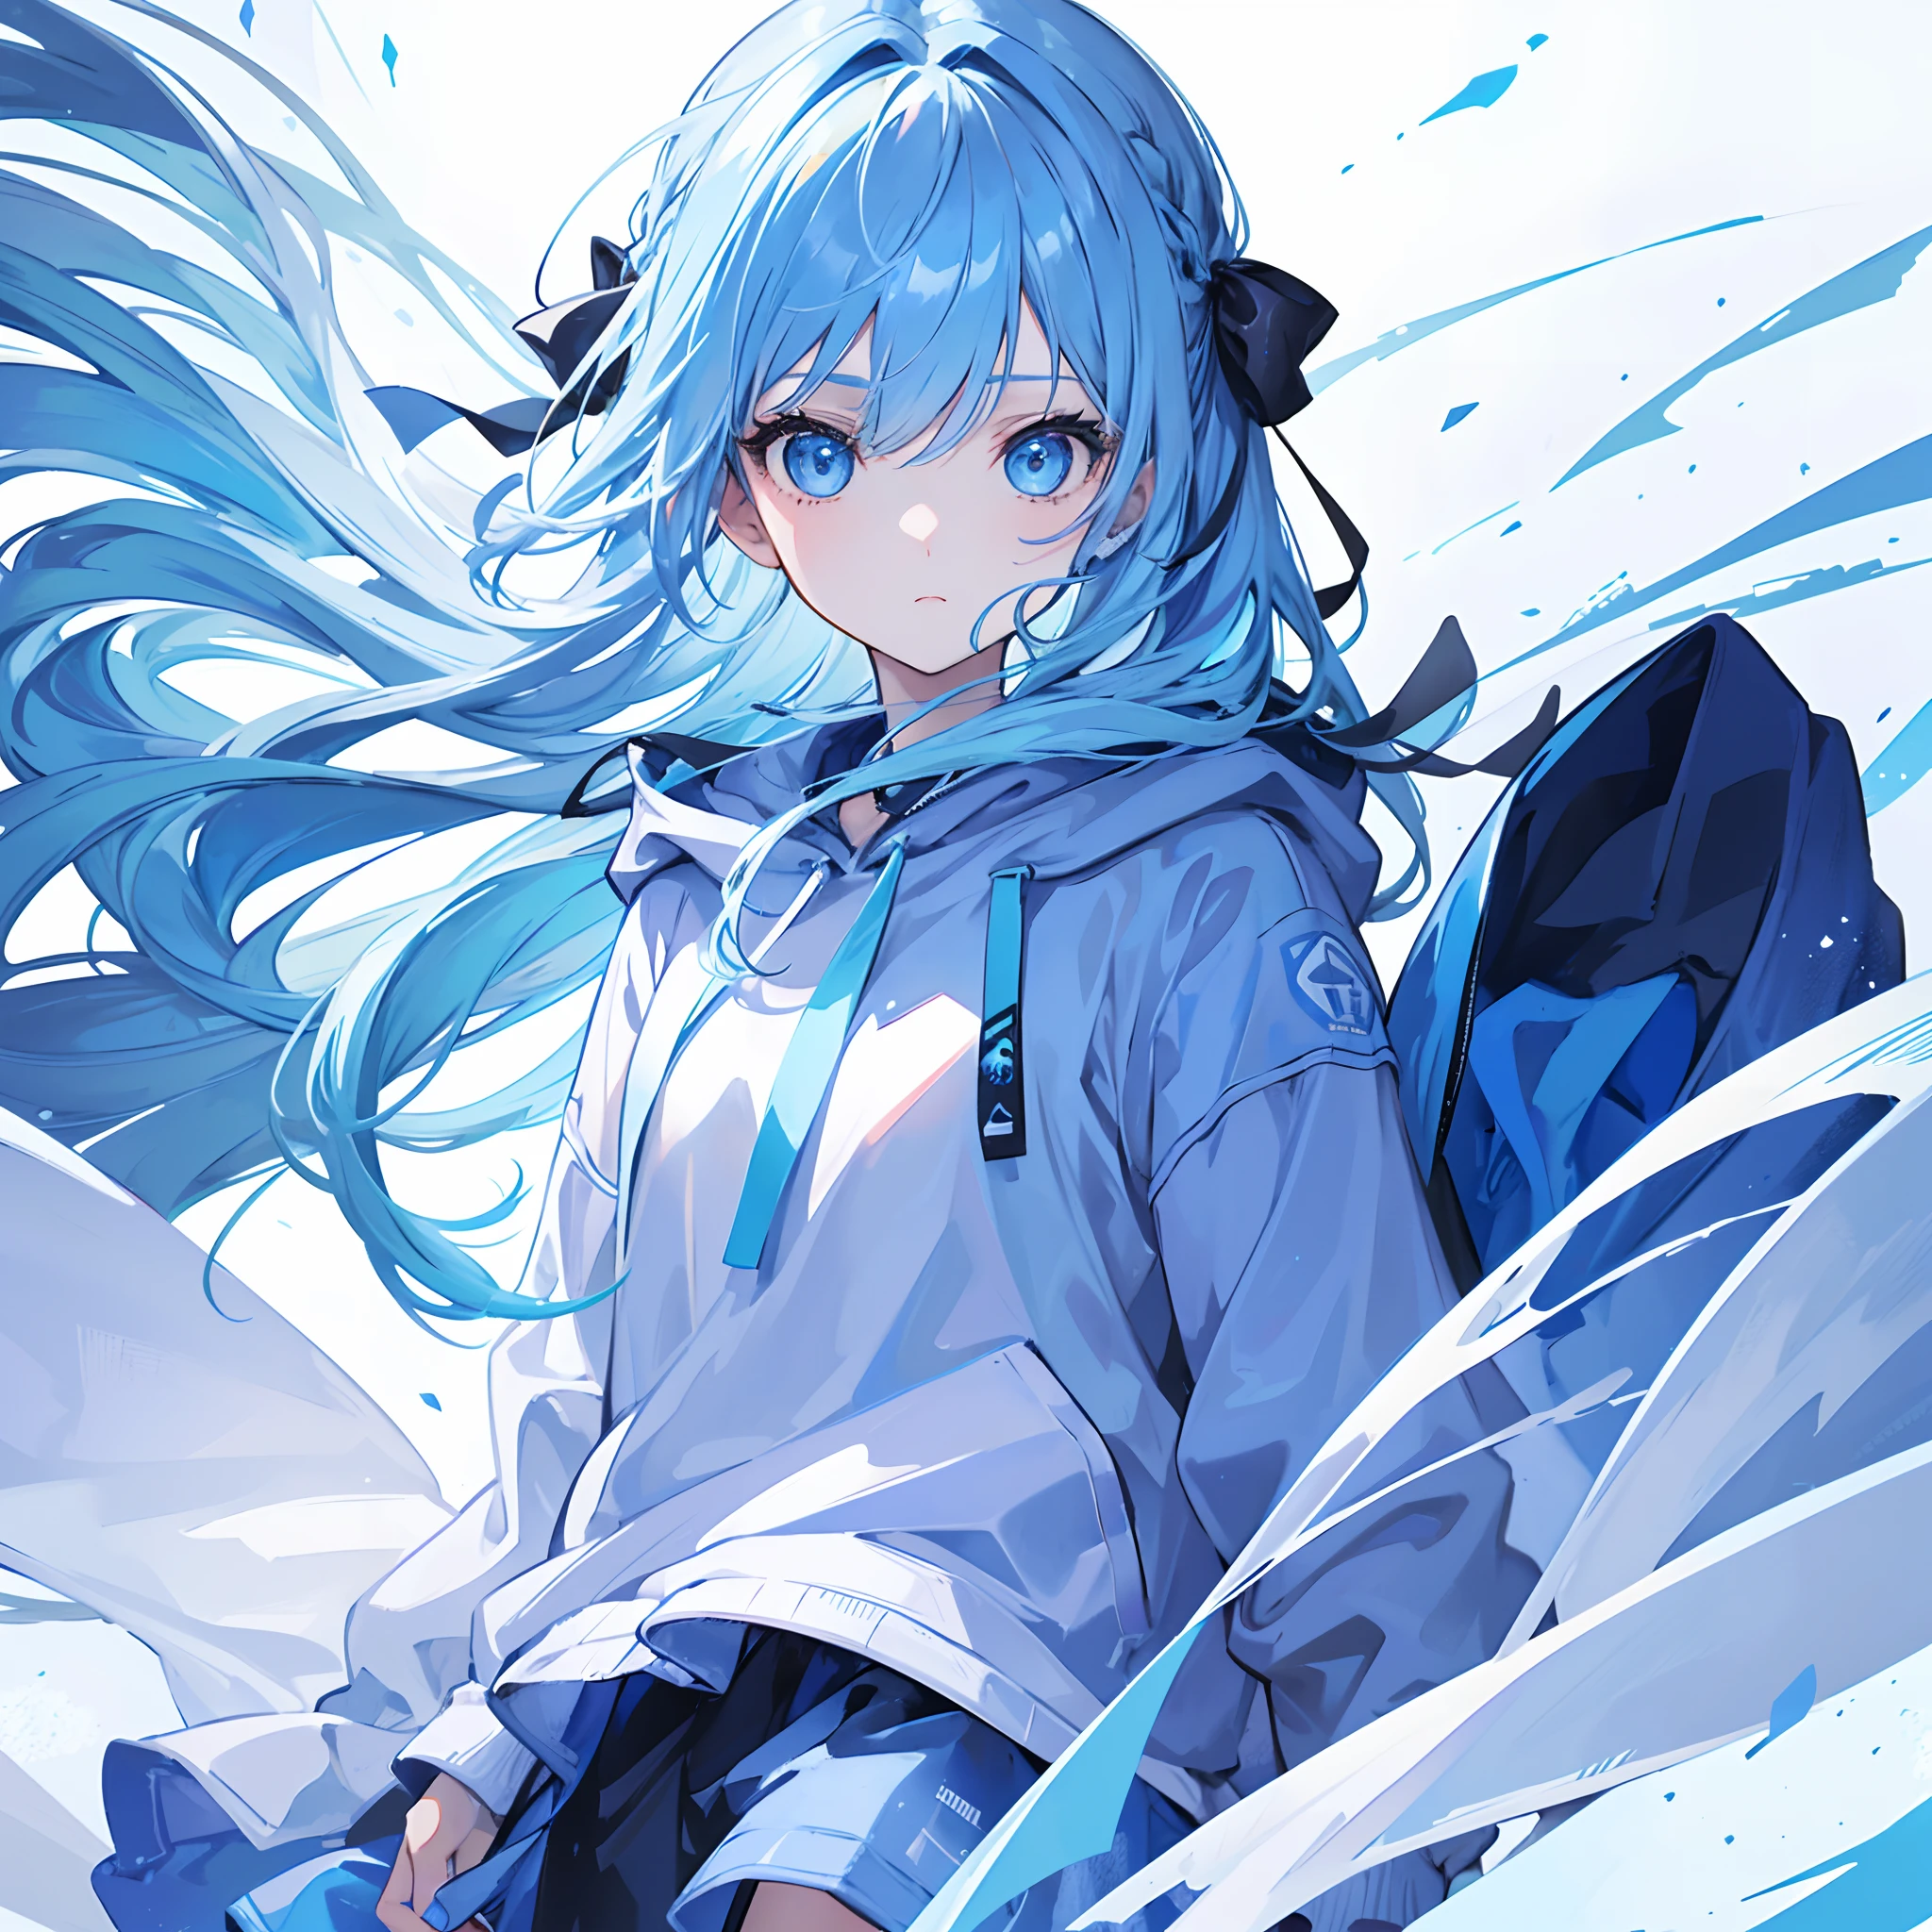 1 Mädchen, mit hellblauen Haaren und blauen Augen, trägt ein Haarband und einen blau-weißen Kapuzenpullover. Die Szene spielt im Winter, wobei das Mädchen den Betrachter direkt ansieht. Dieses Bild kann als Profilbild verwendet werden.